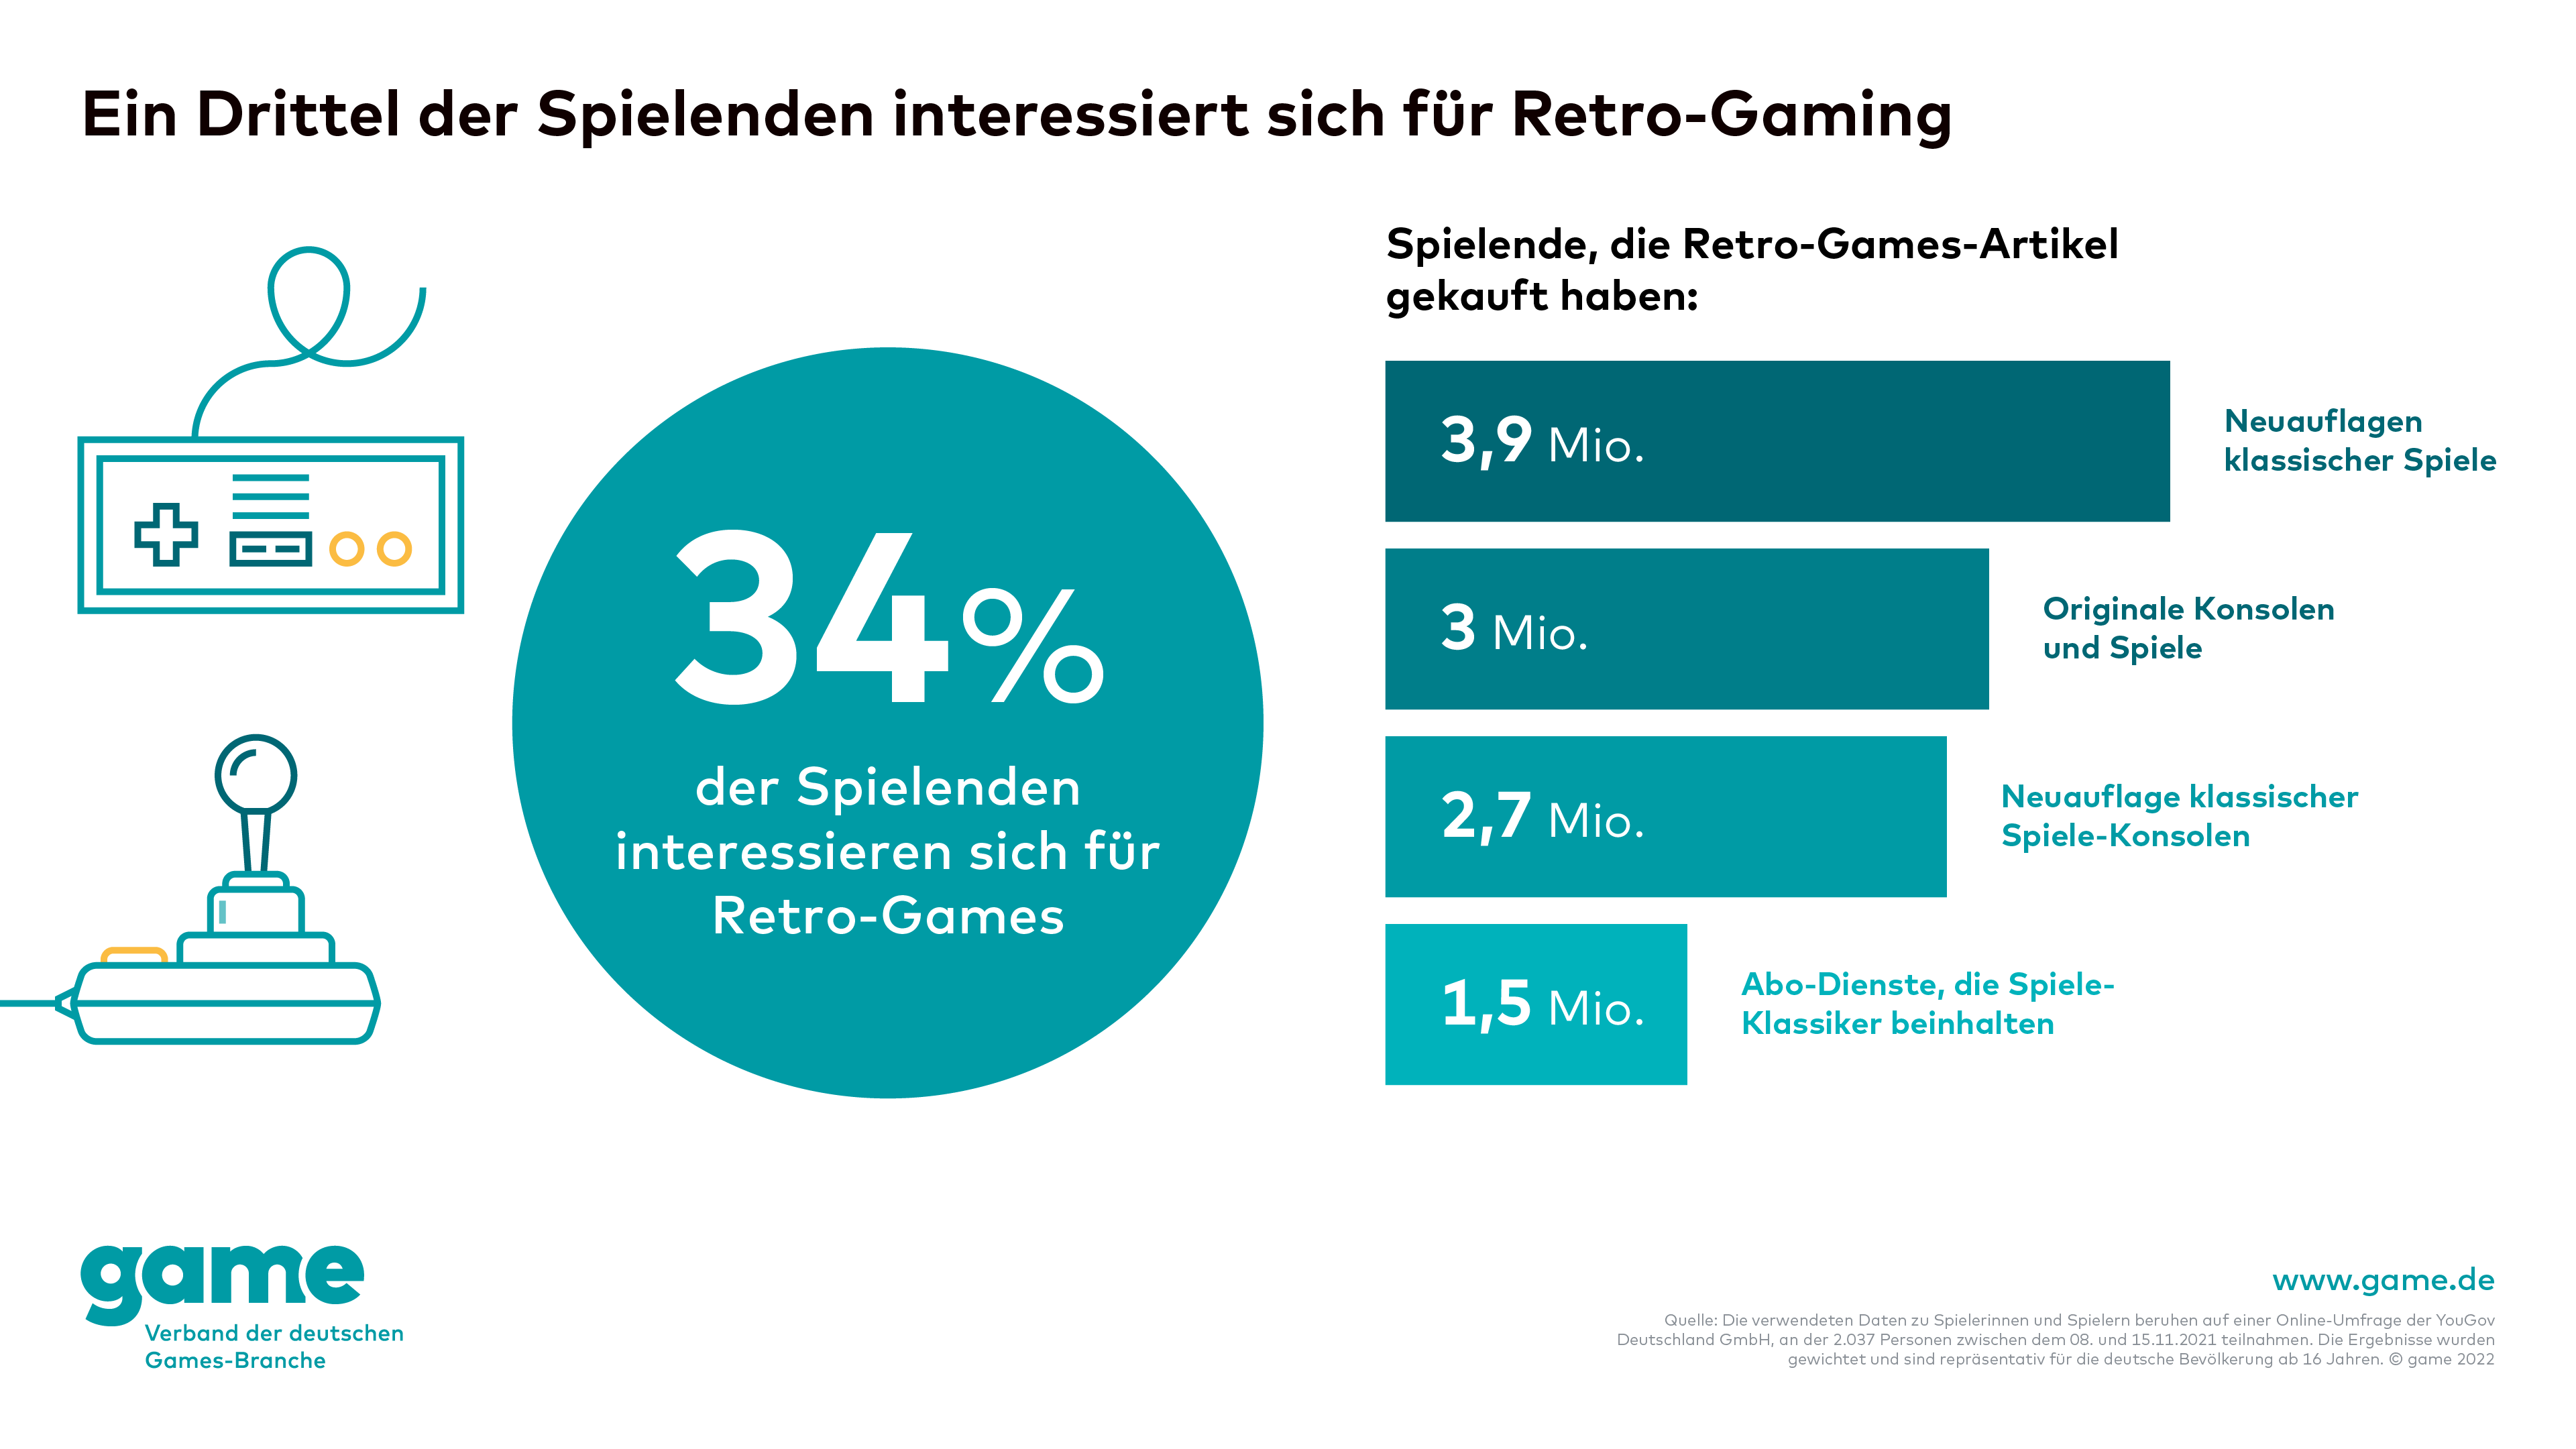 Ein Drittel aller Spielenden interessiert sich für Retro-Gaming